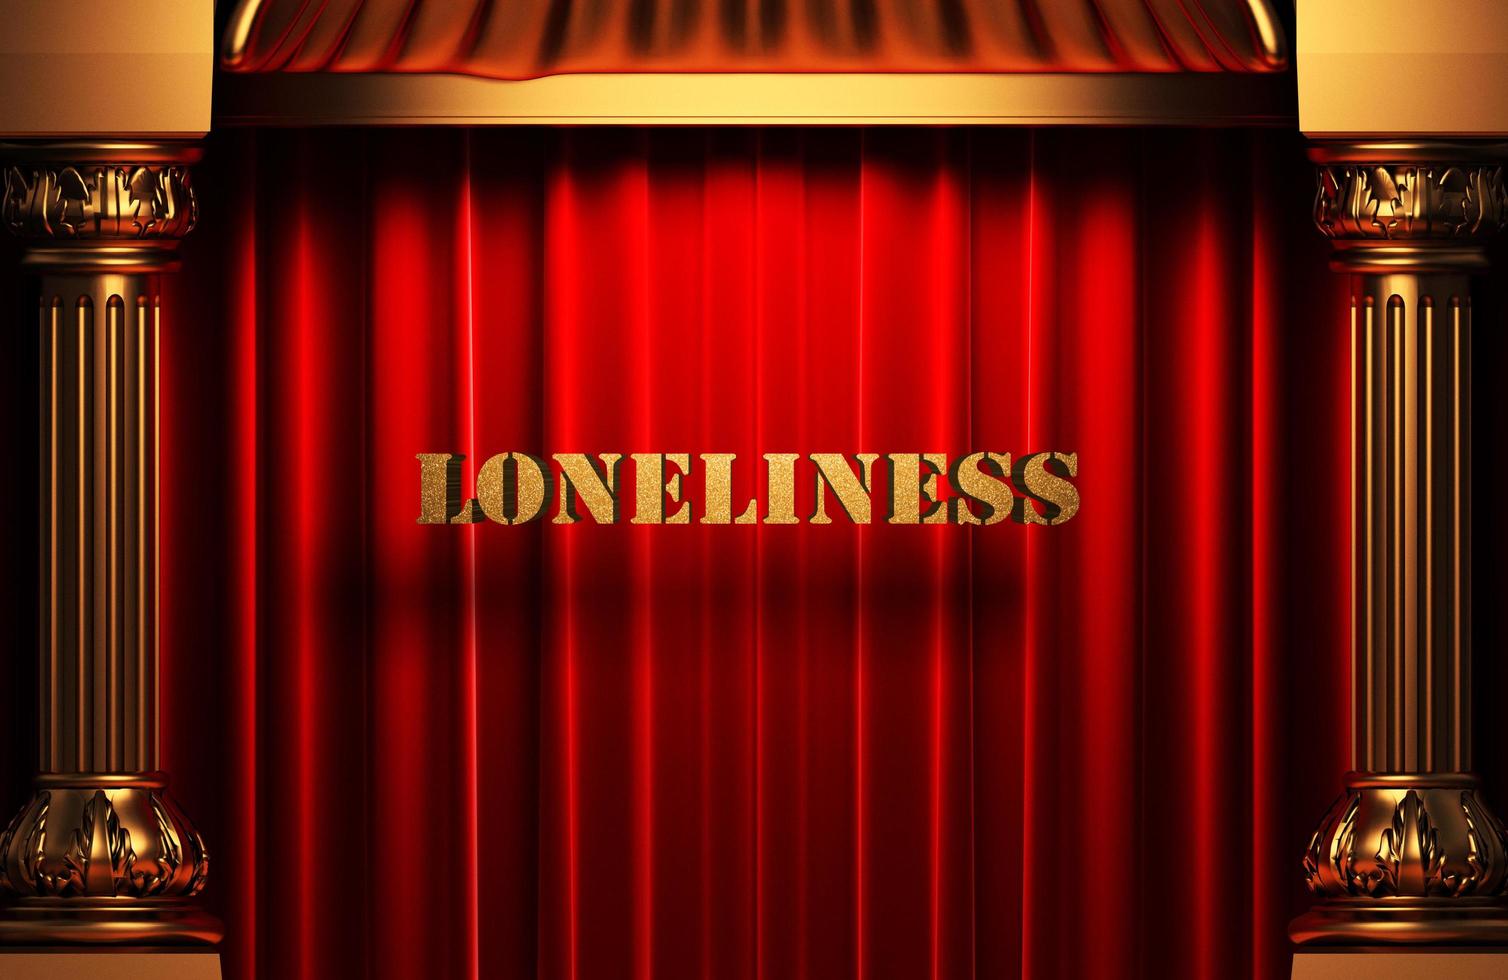 soledad palabra dorada en cortina roja foto